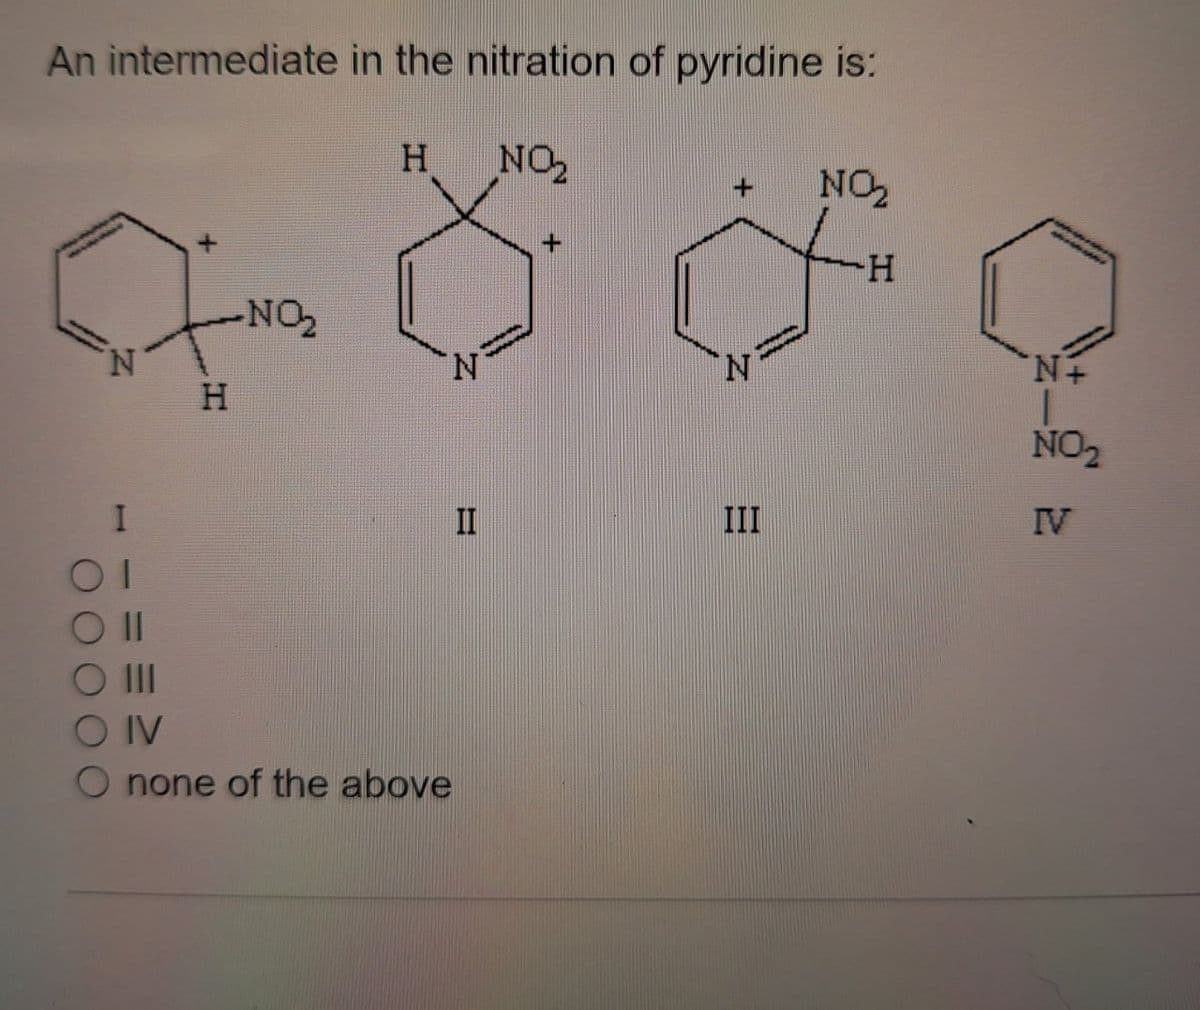 An intermediate in the nitration of pyridine is:
H
NO₂
NO₂
+
H
NO₂
N
N
H
Οι
Oll
O IV
none of the above
N
N+
NO₂
II
III
IV